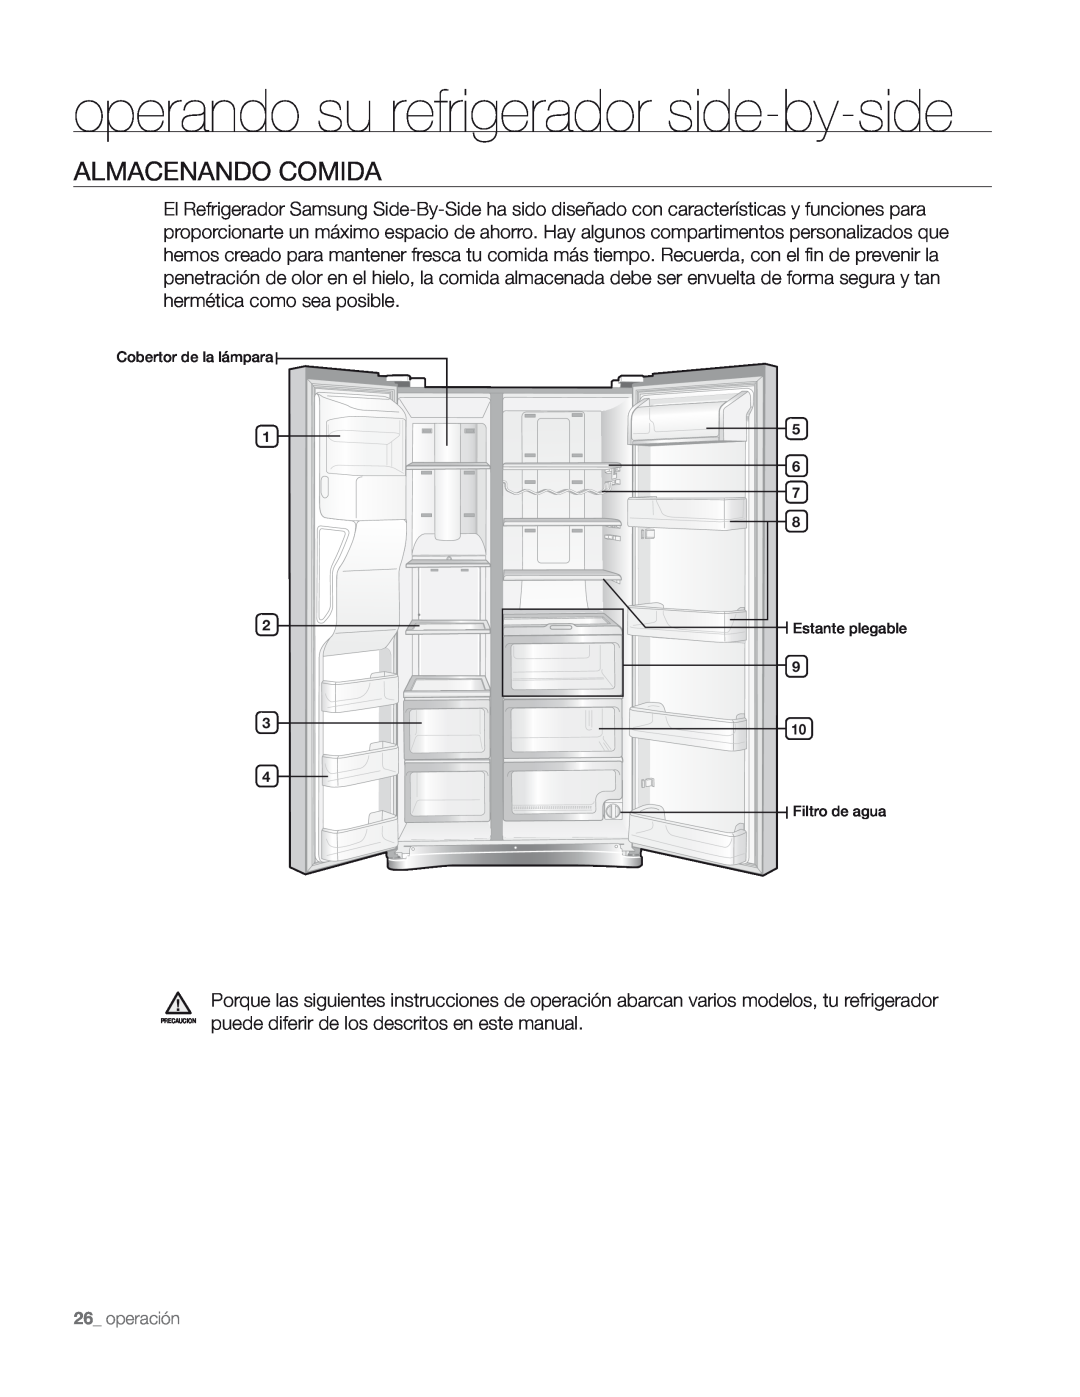 Samsung DA68-01890M user manual Almacenando Comida, operando su refrigerador side-by-side 